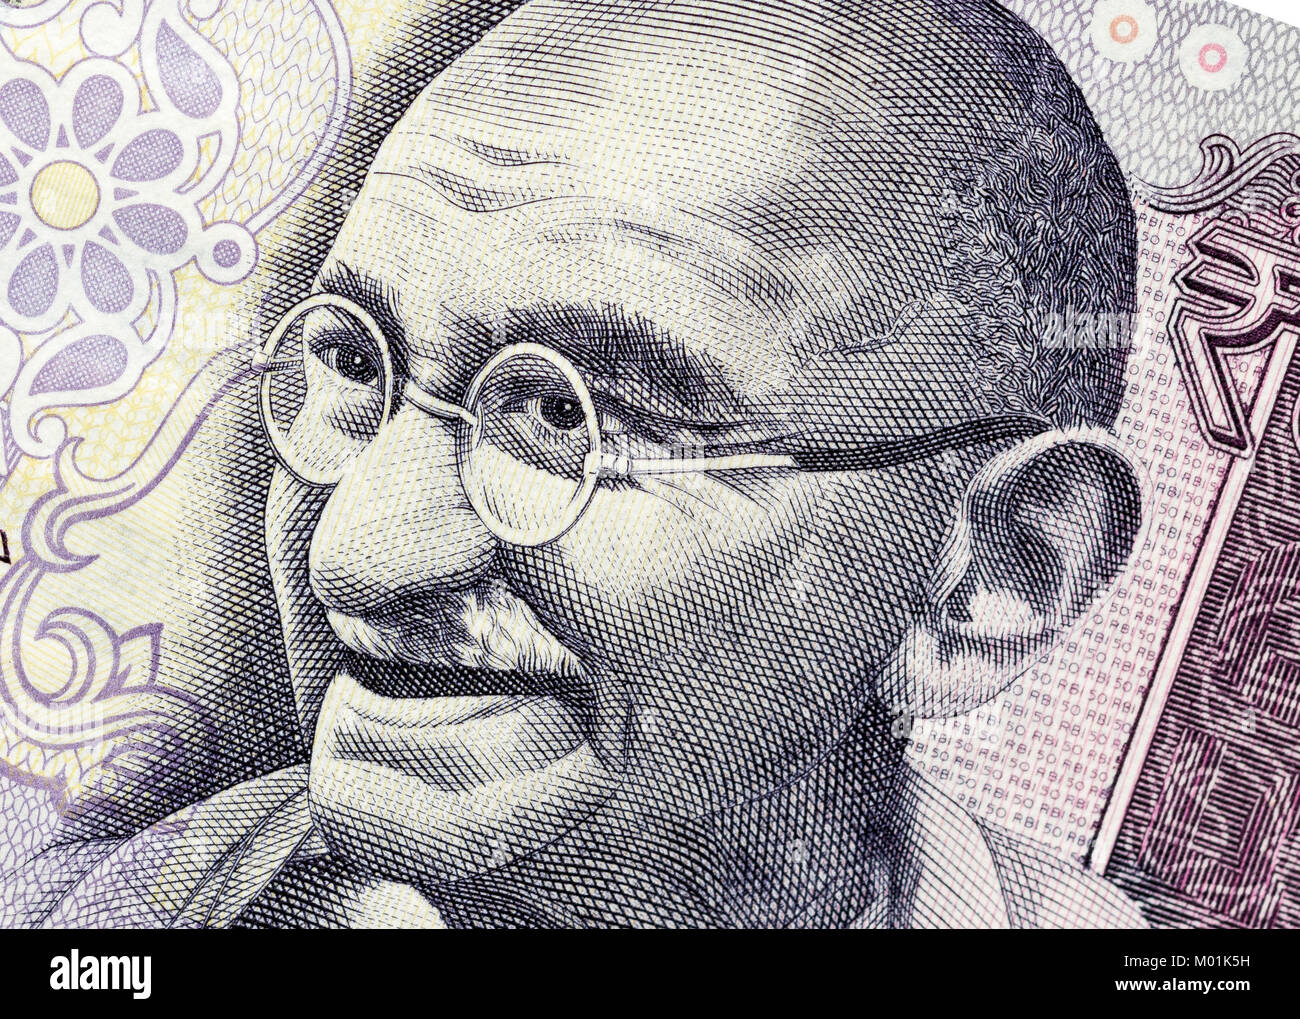 Biella, Italien - 29 Oktober, 2017. Banknote mit Mahatma Gandhi Porträt. Reserve Bank von Indien Stockfoto